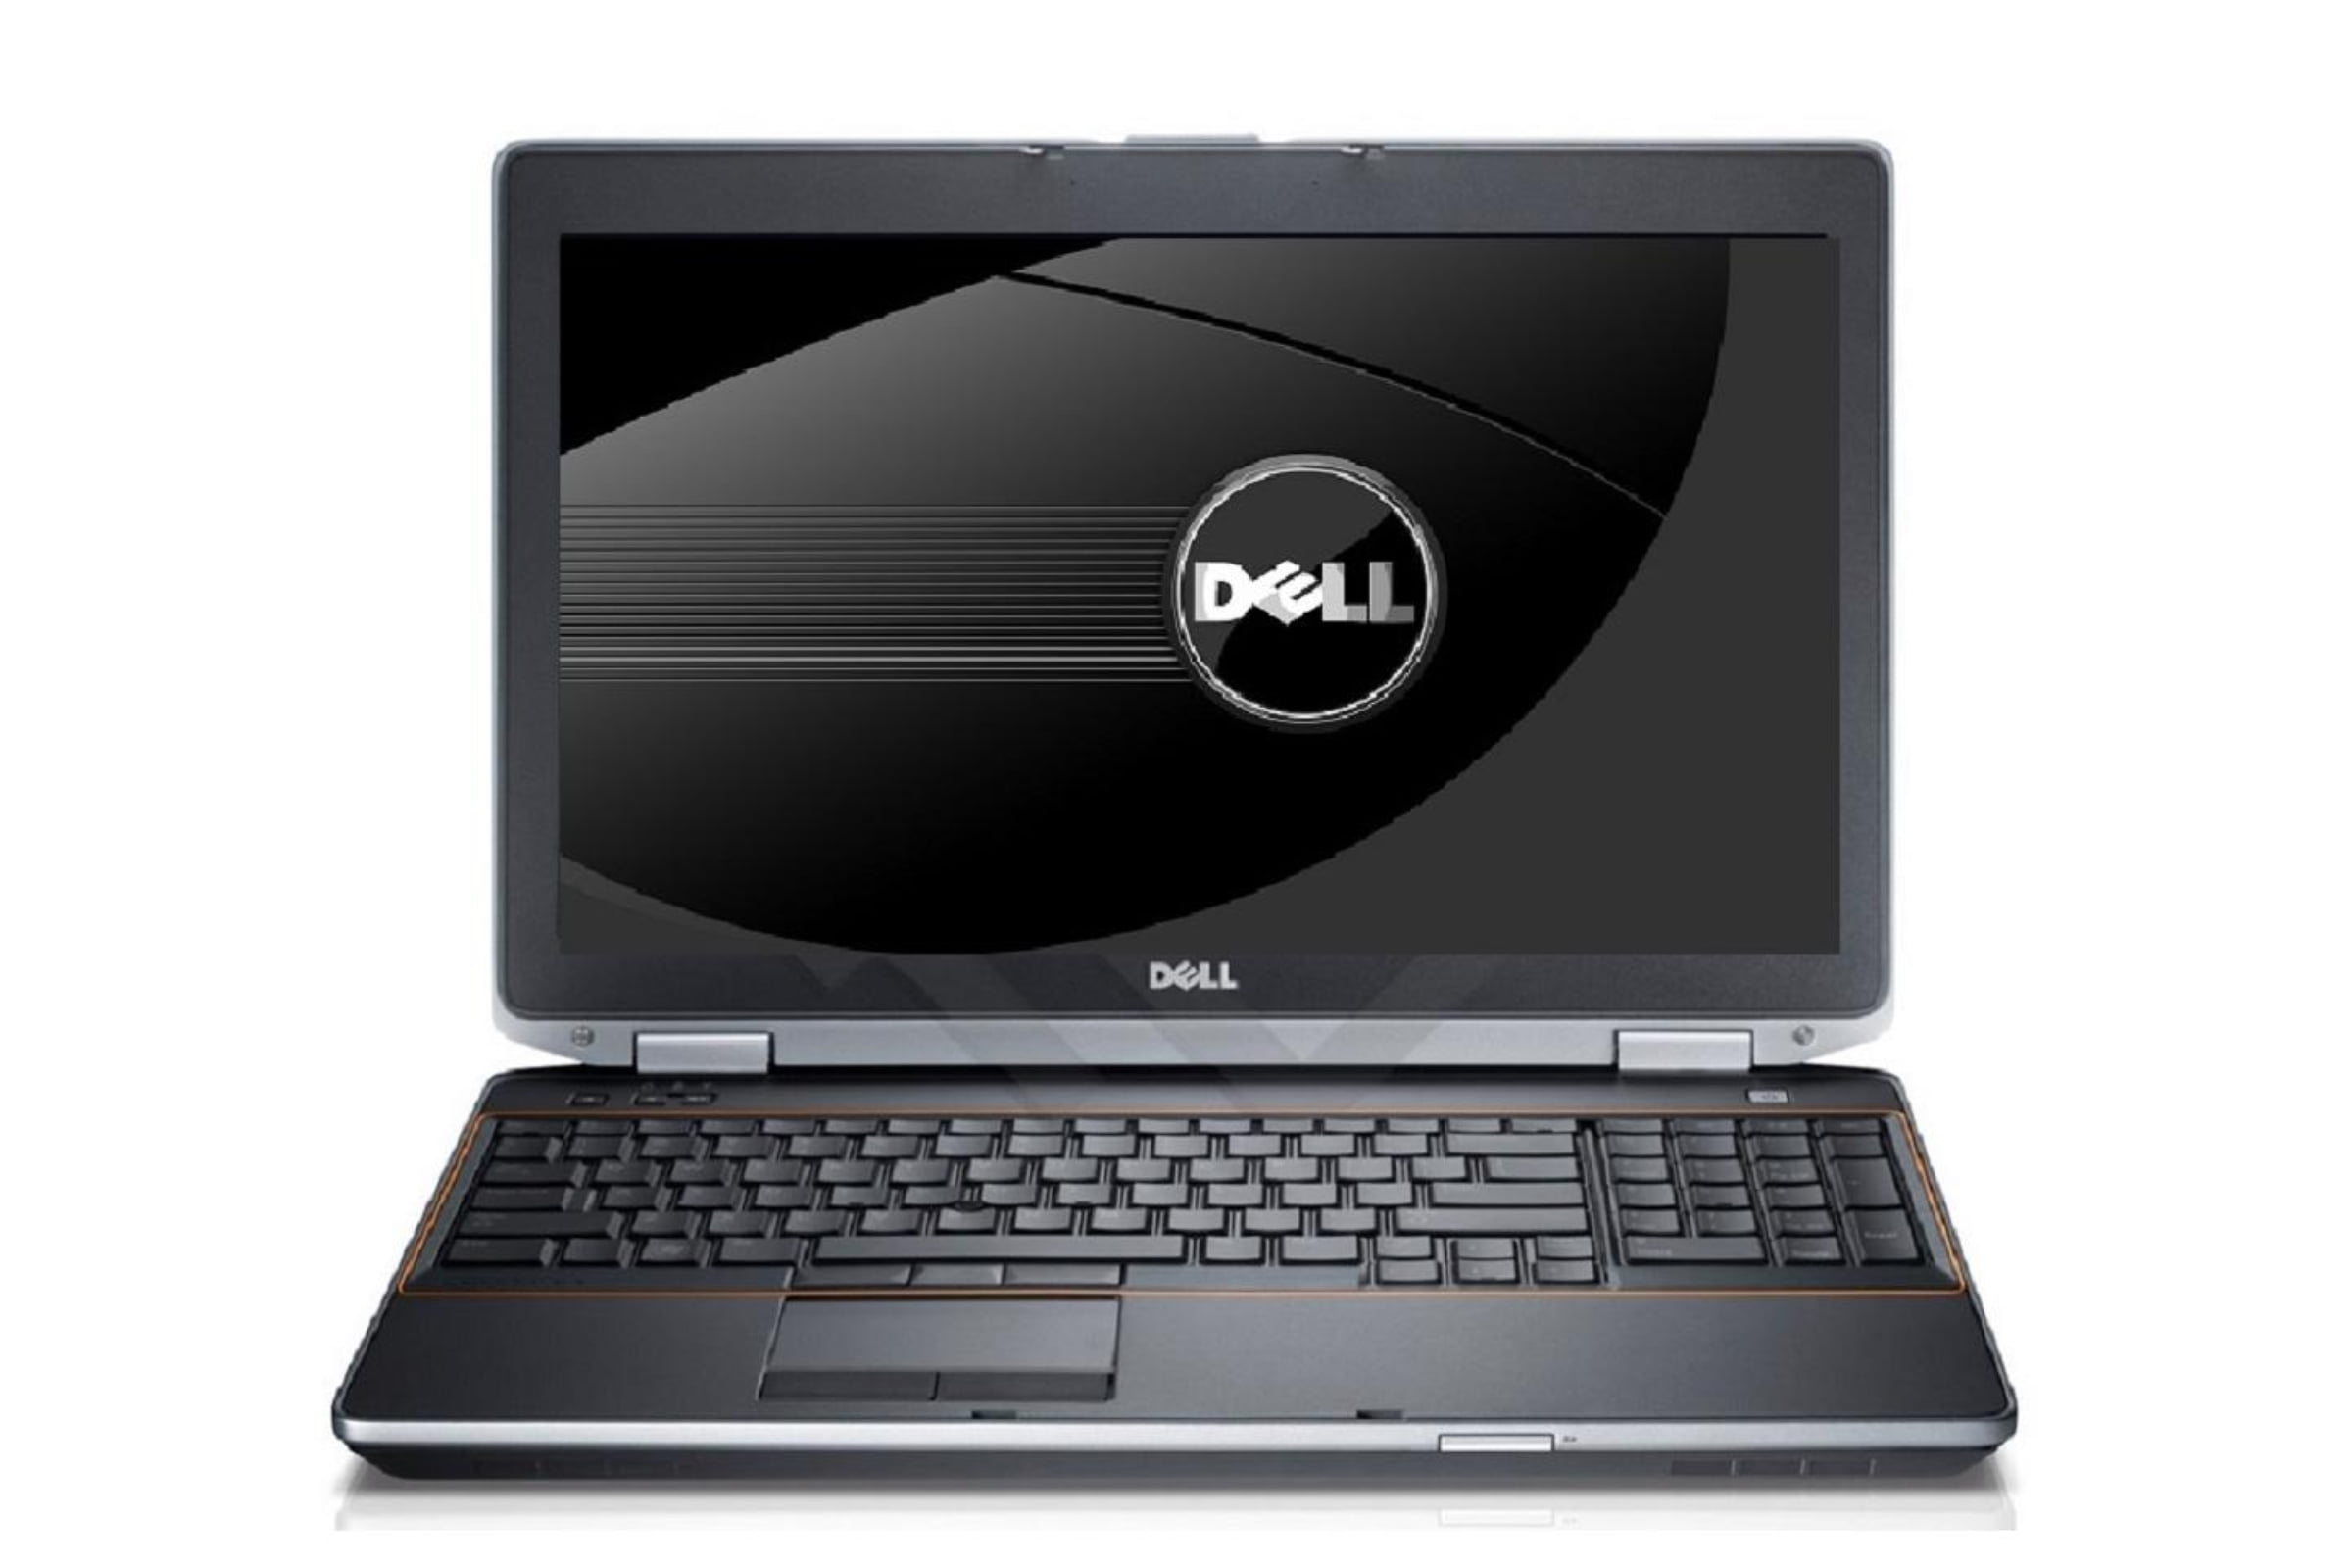 Dell Latitude E6540 15.6-in Used Laptop - Intel Core i7 4800MQ 4th Gen ...